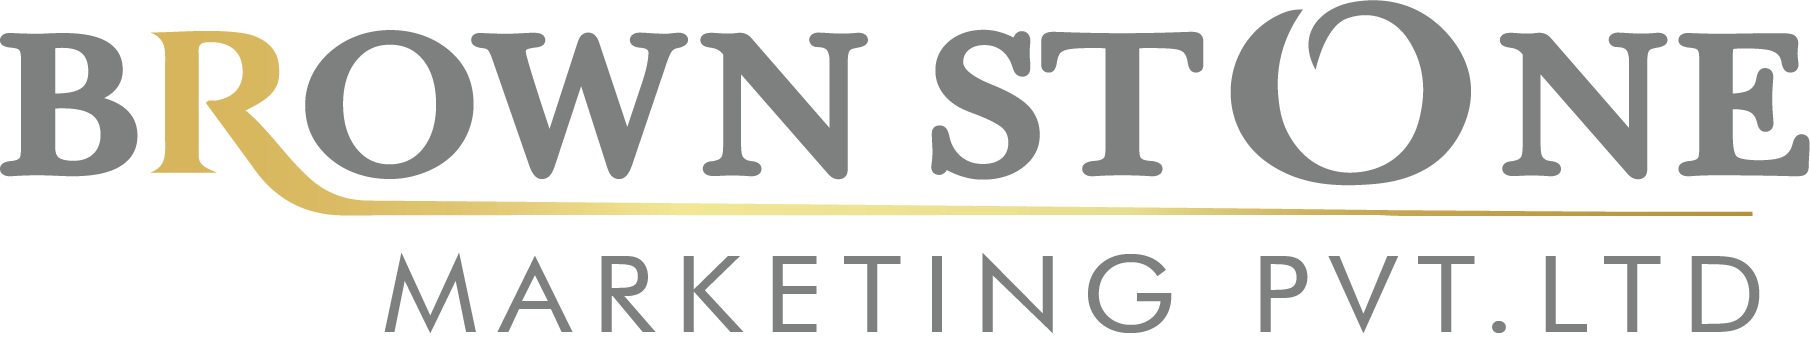 Brown Stone Marketing Pvt. Ltd